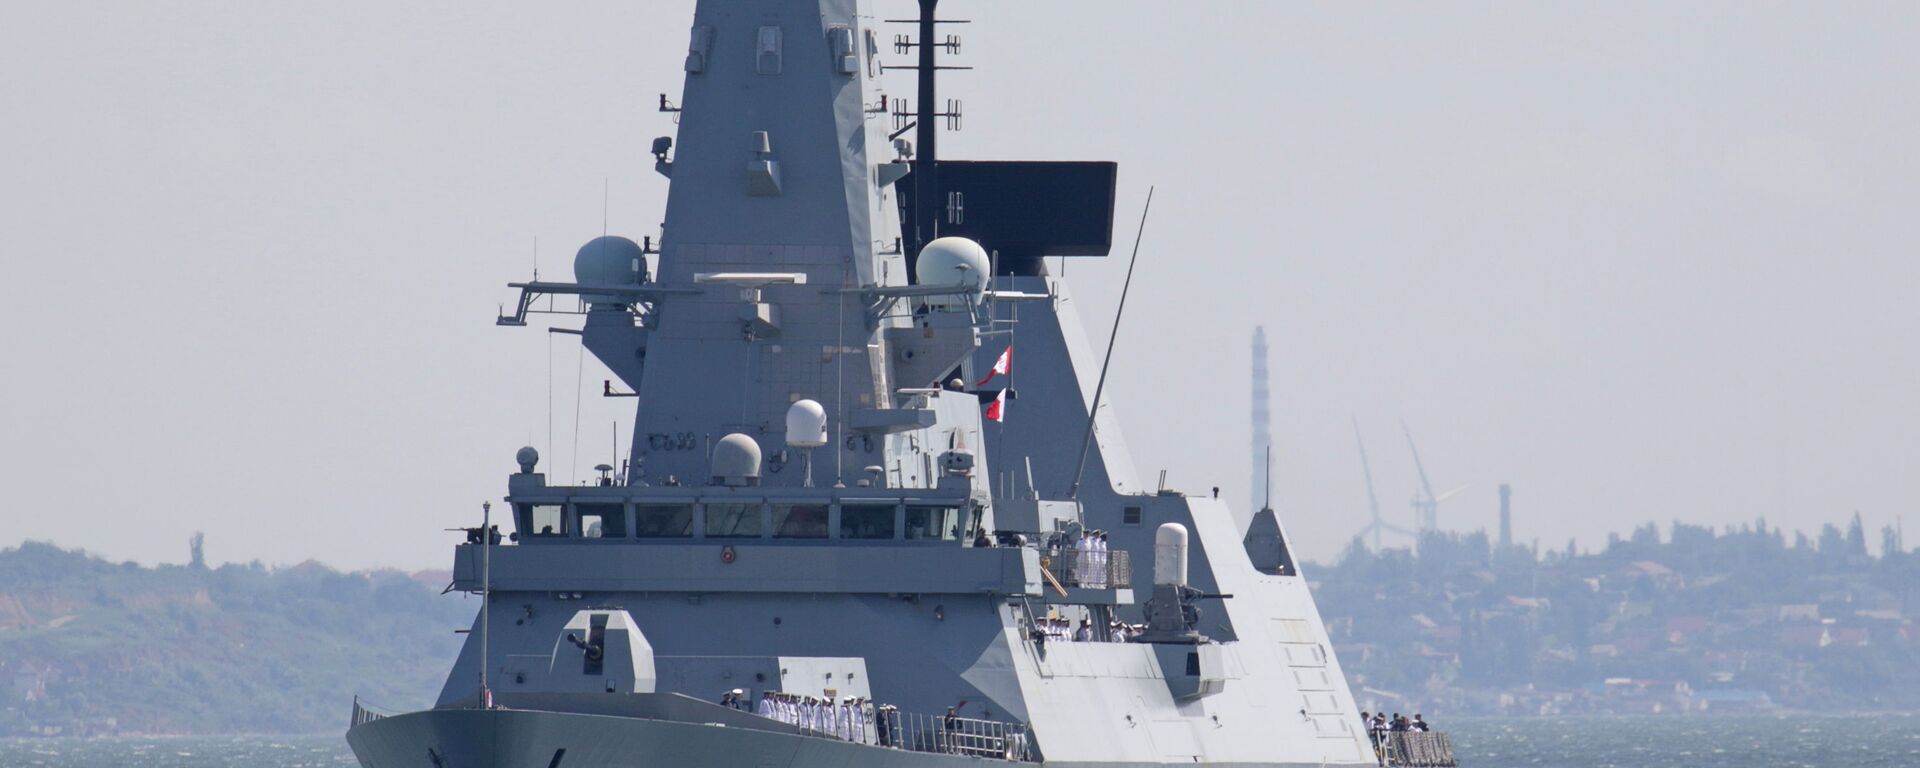 Разарач типа ХМС „Дефендер“ британске краљевске морнарице стиже у црноморску луку Одеса, Украјина, 18. јуна 2021. - Sputnik Србија, 1920, 13.04.2022